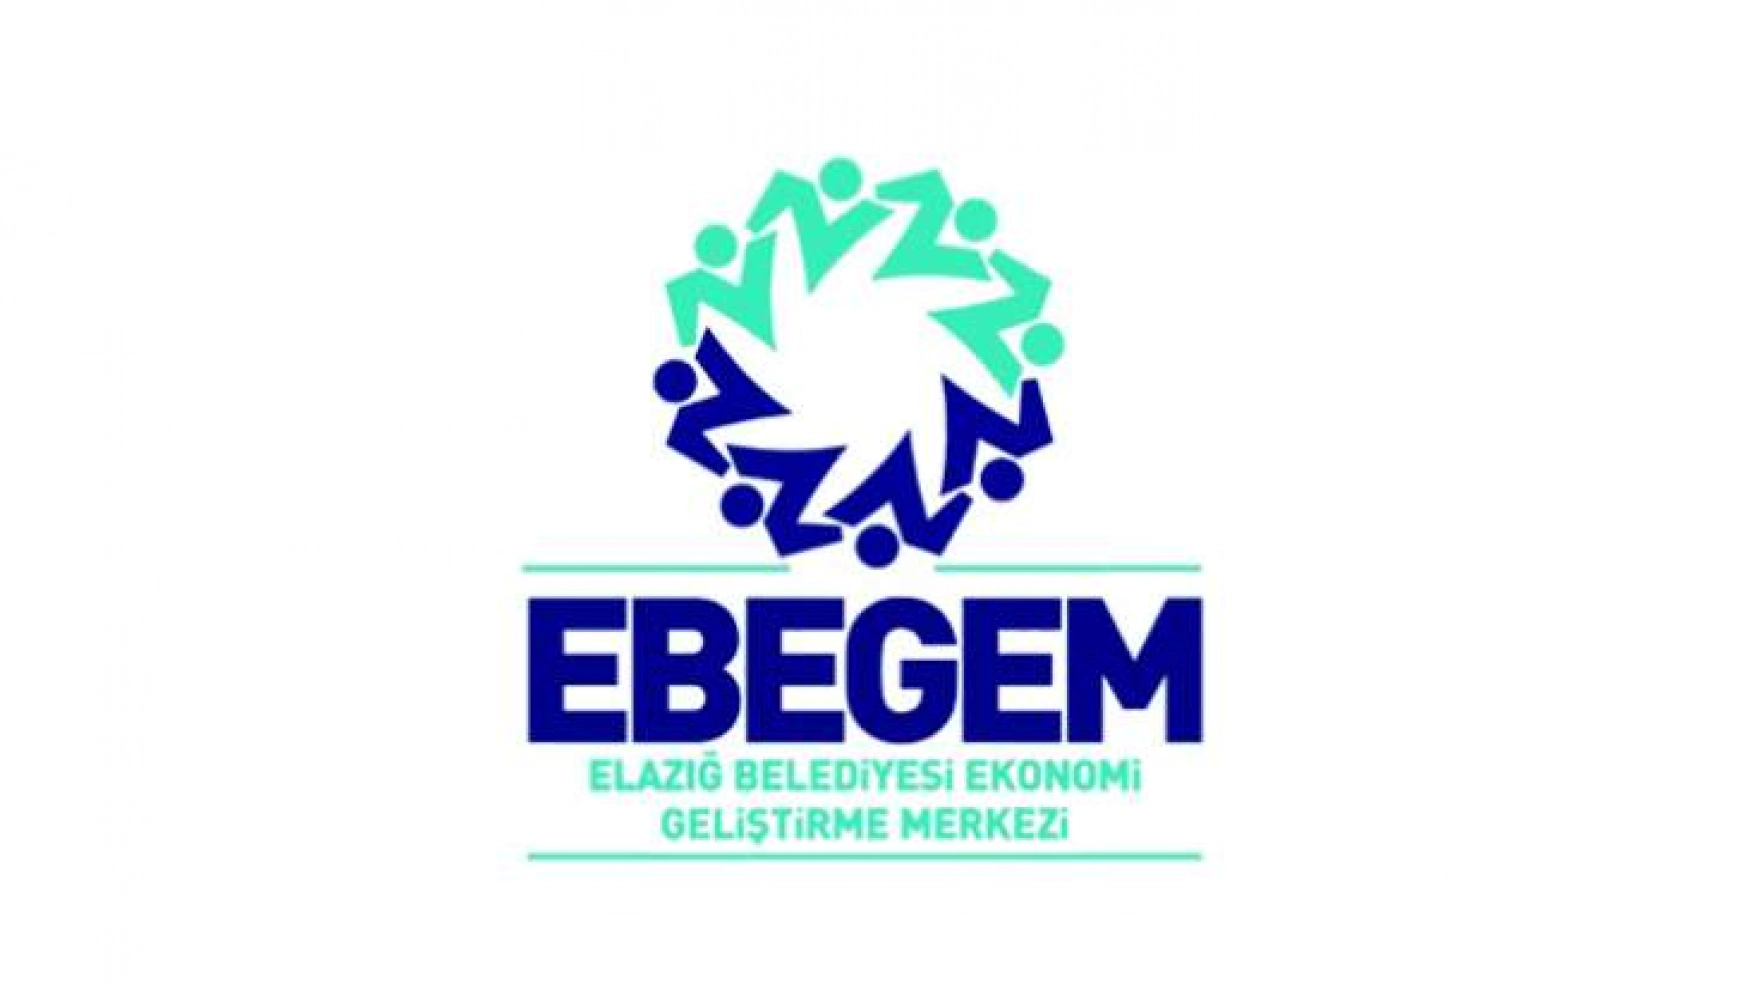 Ebegem'de Data Soft Eğitimleri Başlıyor